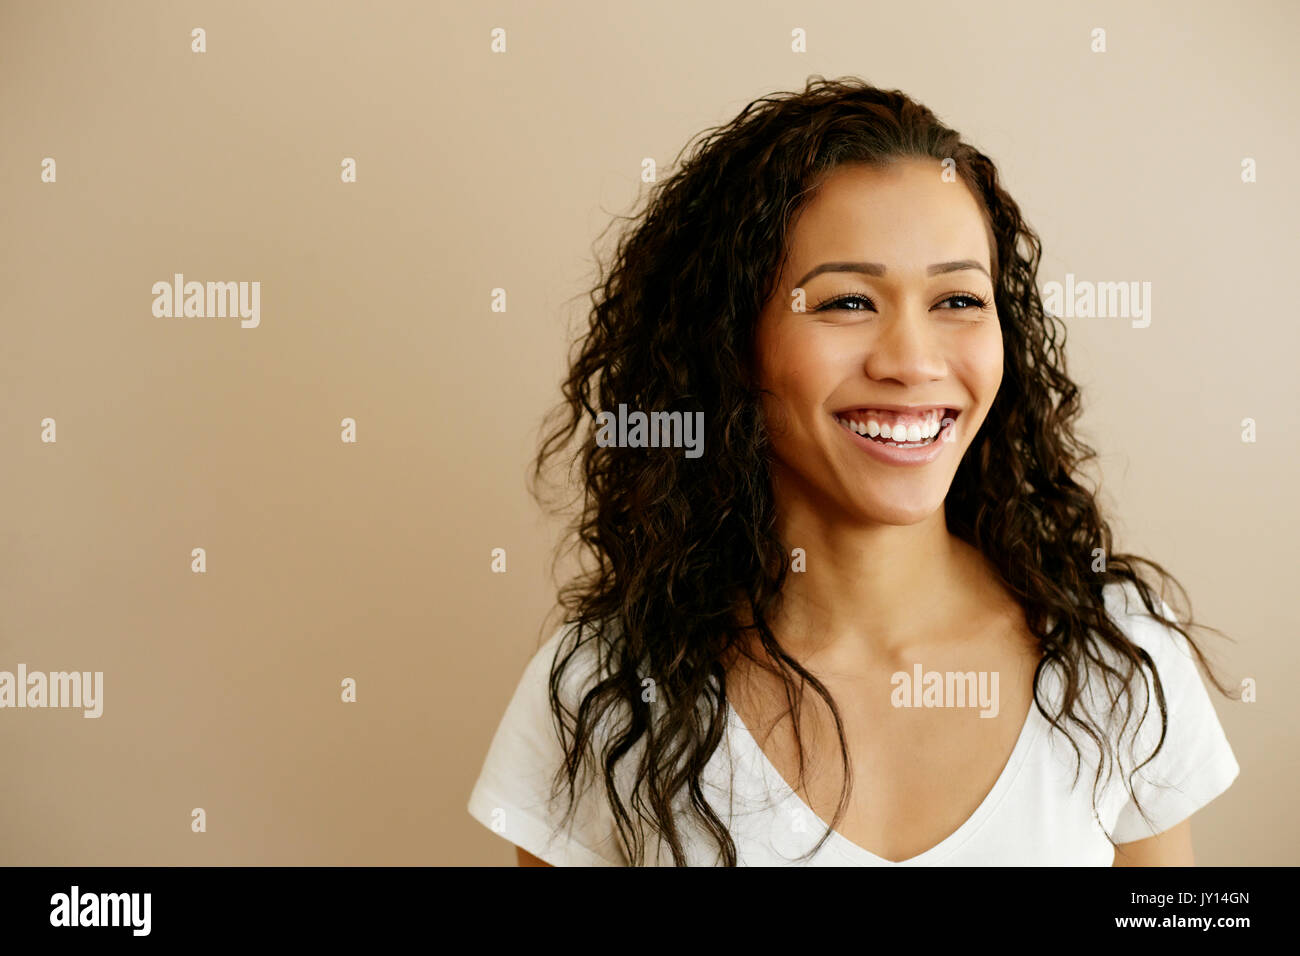 Portrait of smiling woman Banque D'Images